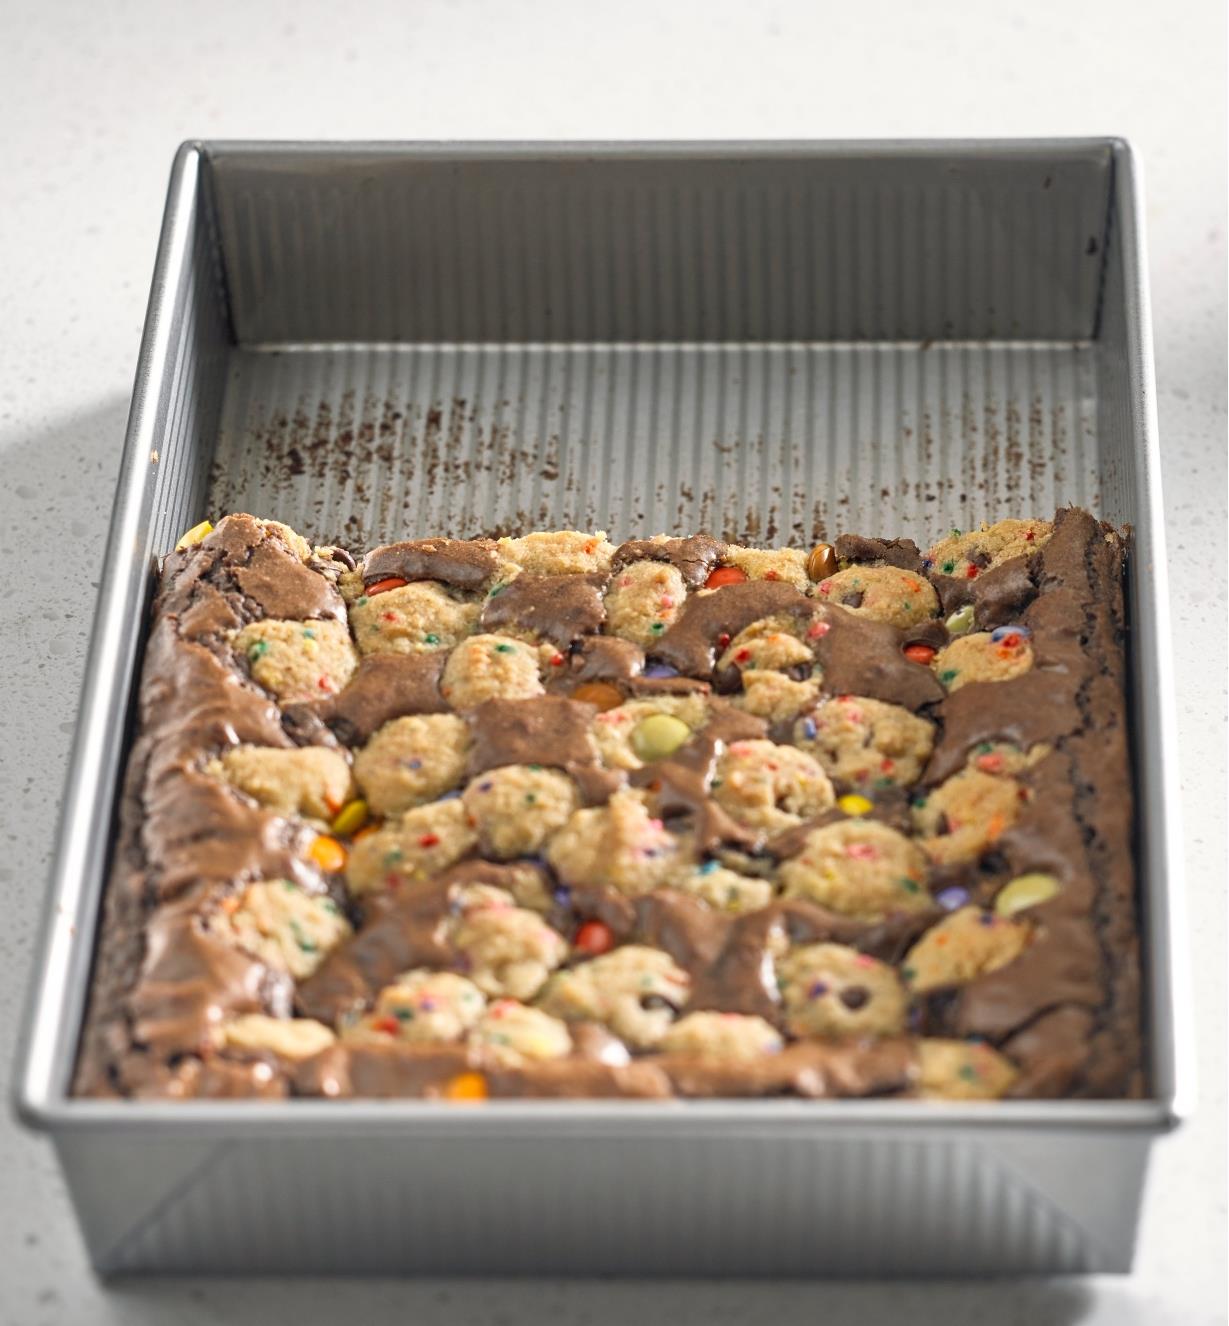 Moule à gâteau antiadhésif de 13 po × 9 po fabriqué par USA Pan à moitié plein de brownies